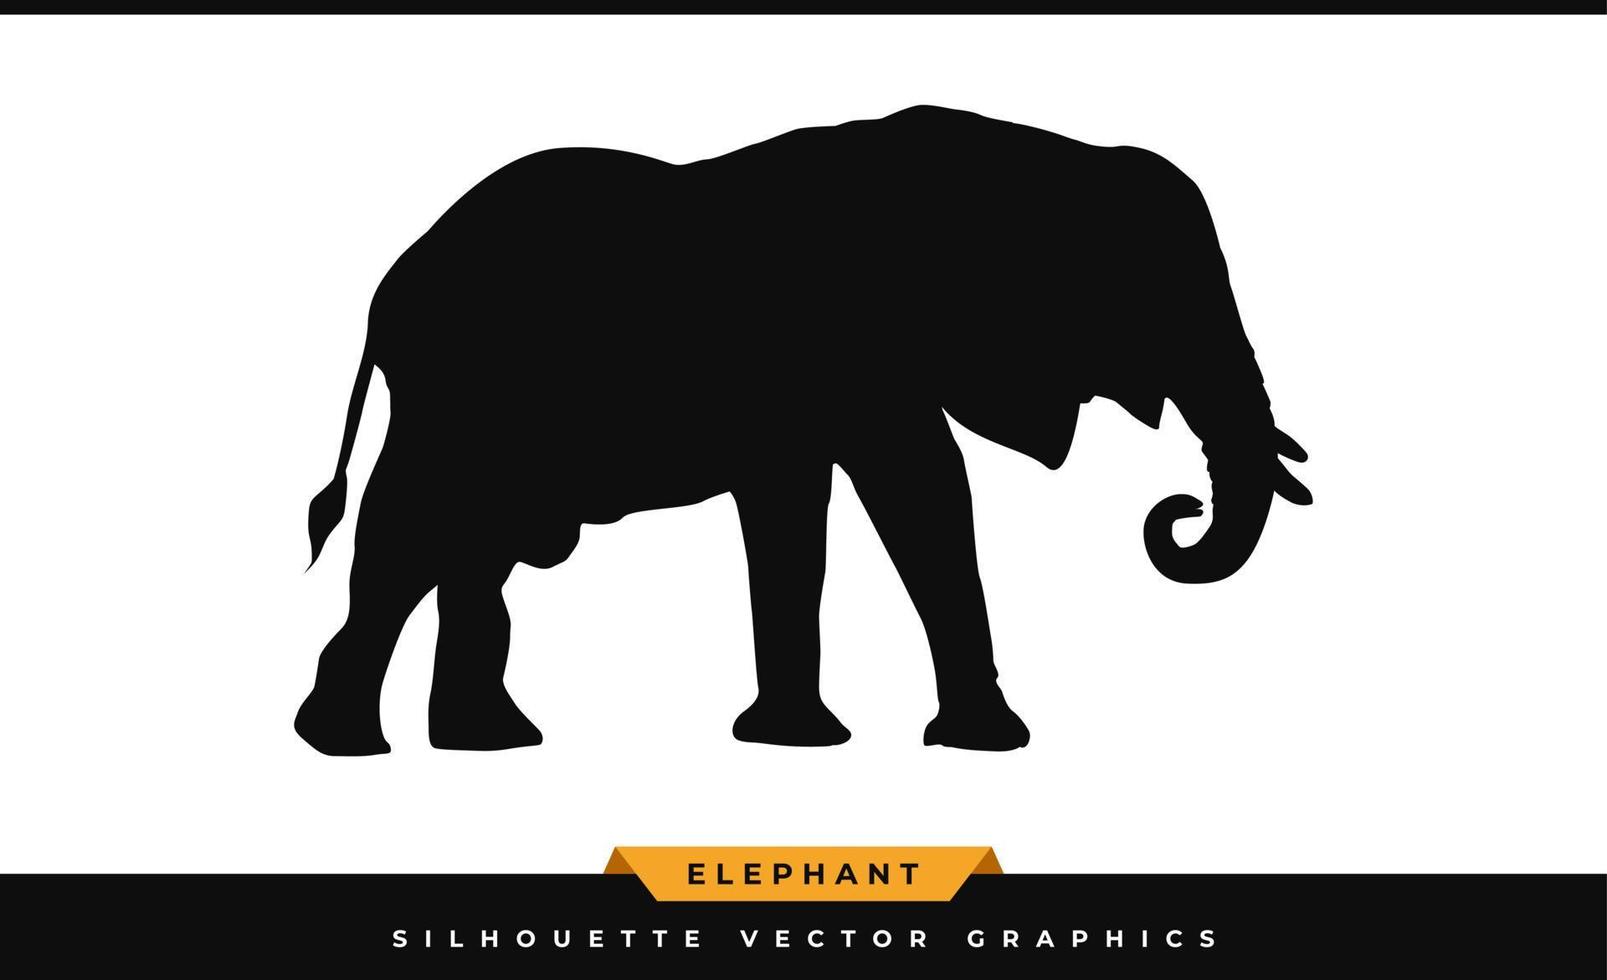 silhouette d'éléphant. éléphant de silhouette, isolé sur fond blanc. icône d'éléphant noir, vecteur d'illustration de grands mammifères sauvages, chemin de découpe laser.